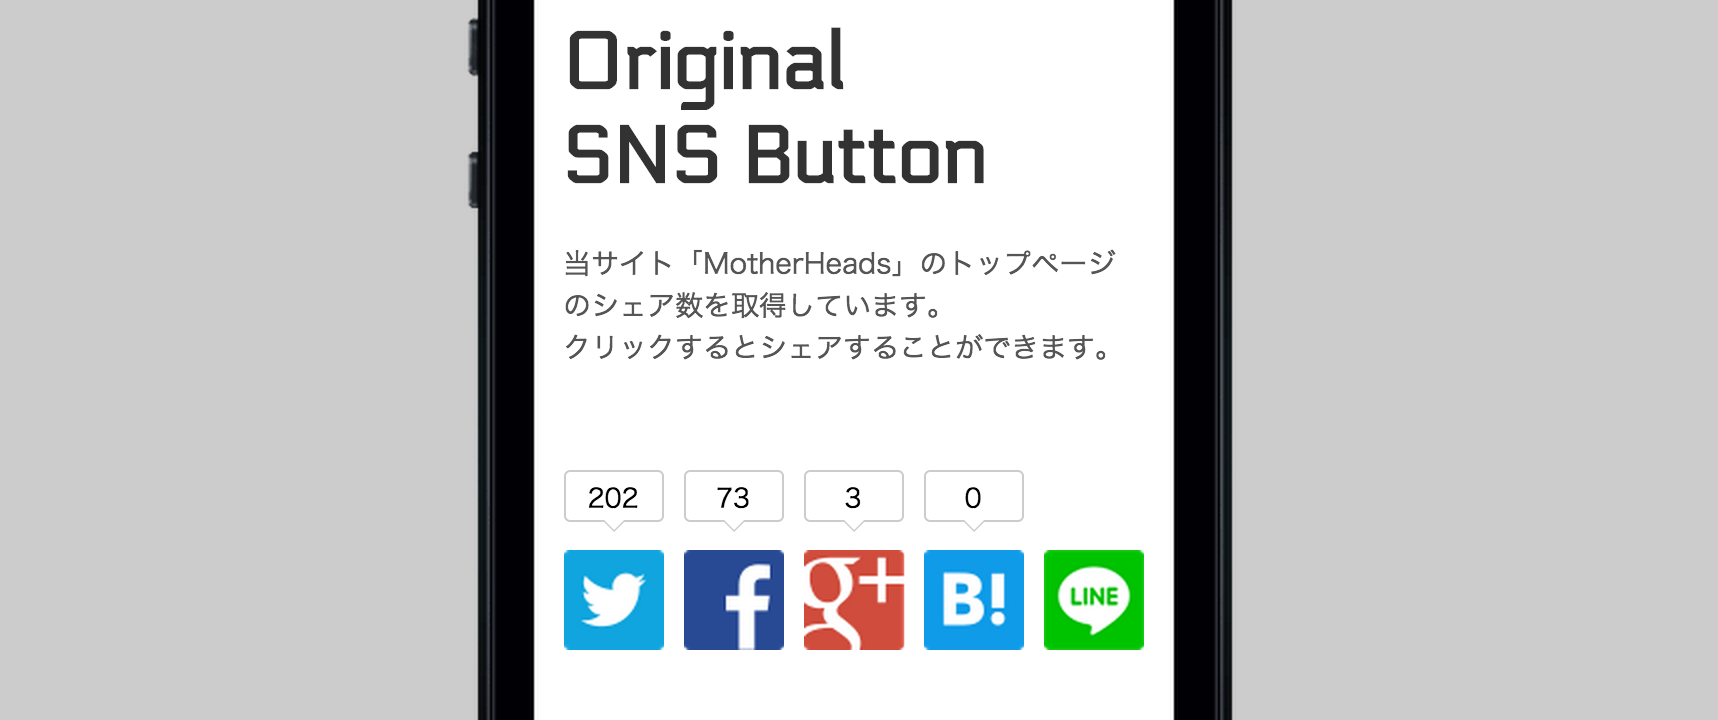 Original button